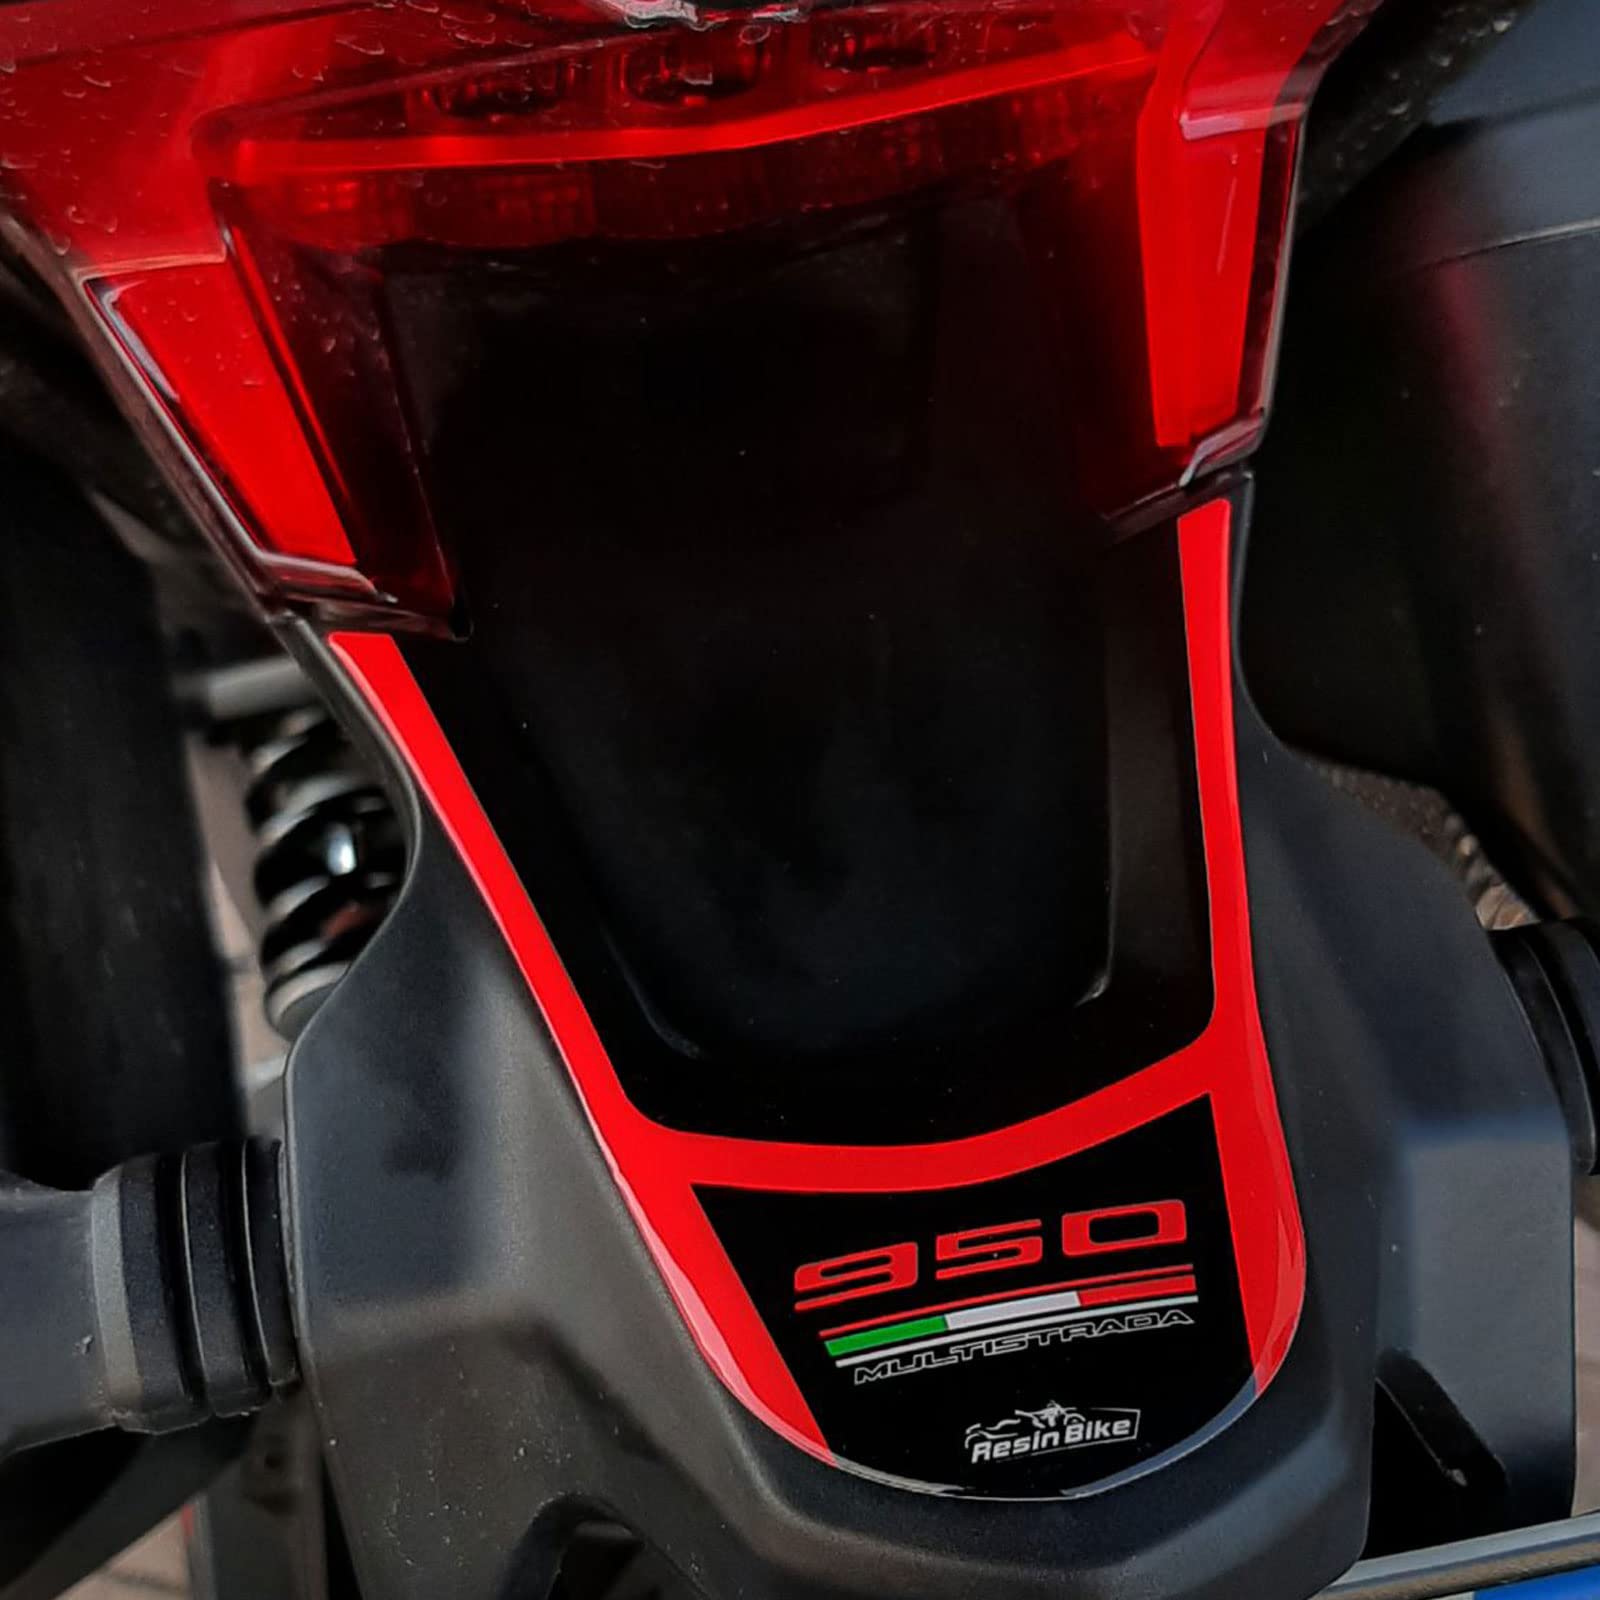 Resin Bike Aufkleber für Motorrad Kompatibel mit Ducati Multistrada 950 2018-2020. Heckschutz Stößen und Kratzern. 3D-Harzklebstoff - Stickers - Made in Italy von Resin Bike